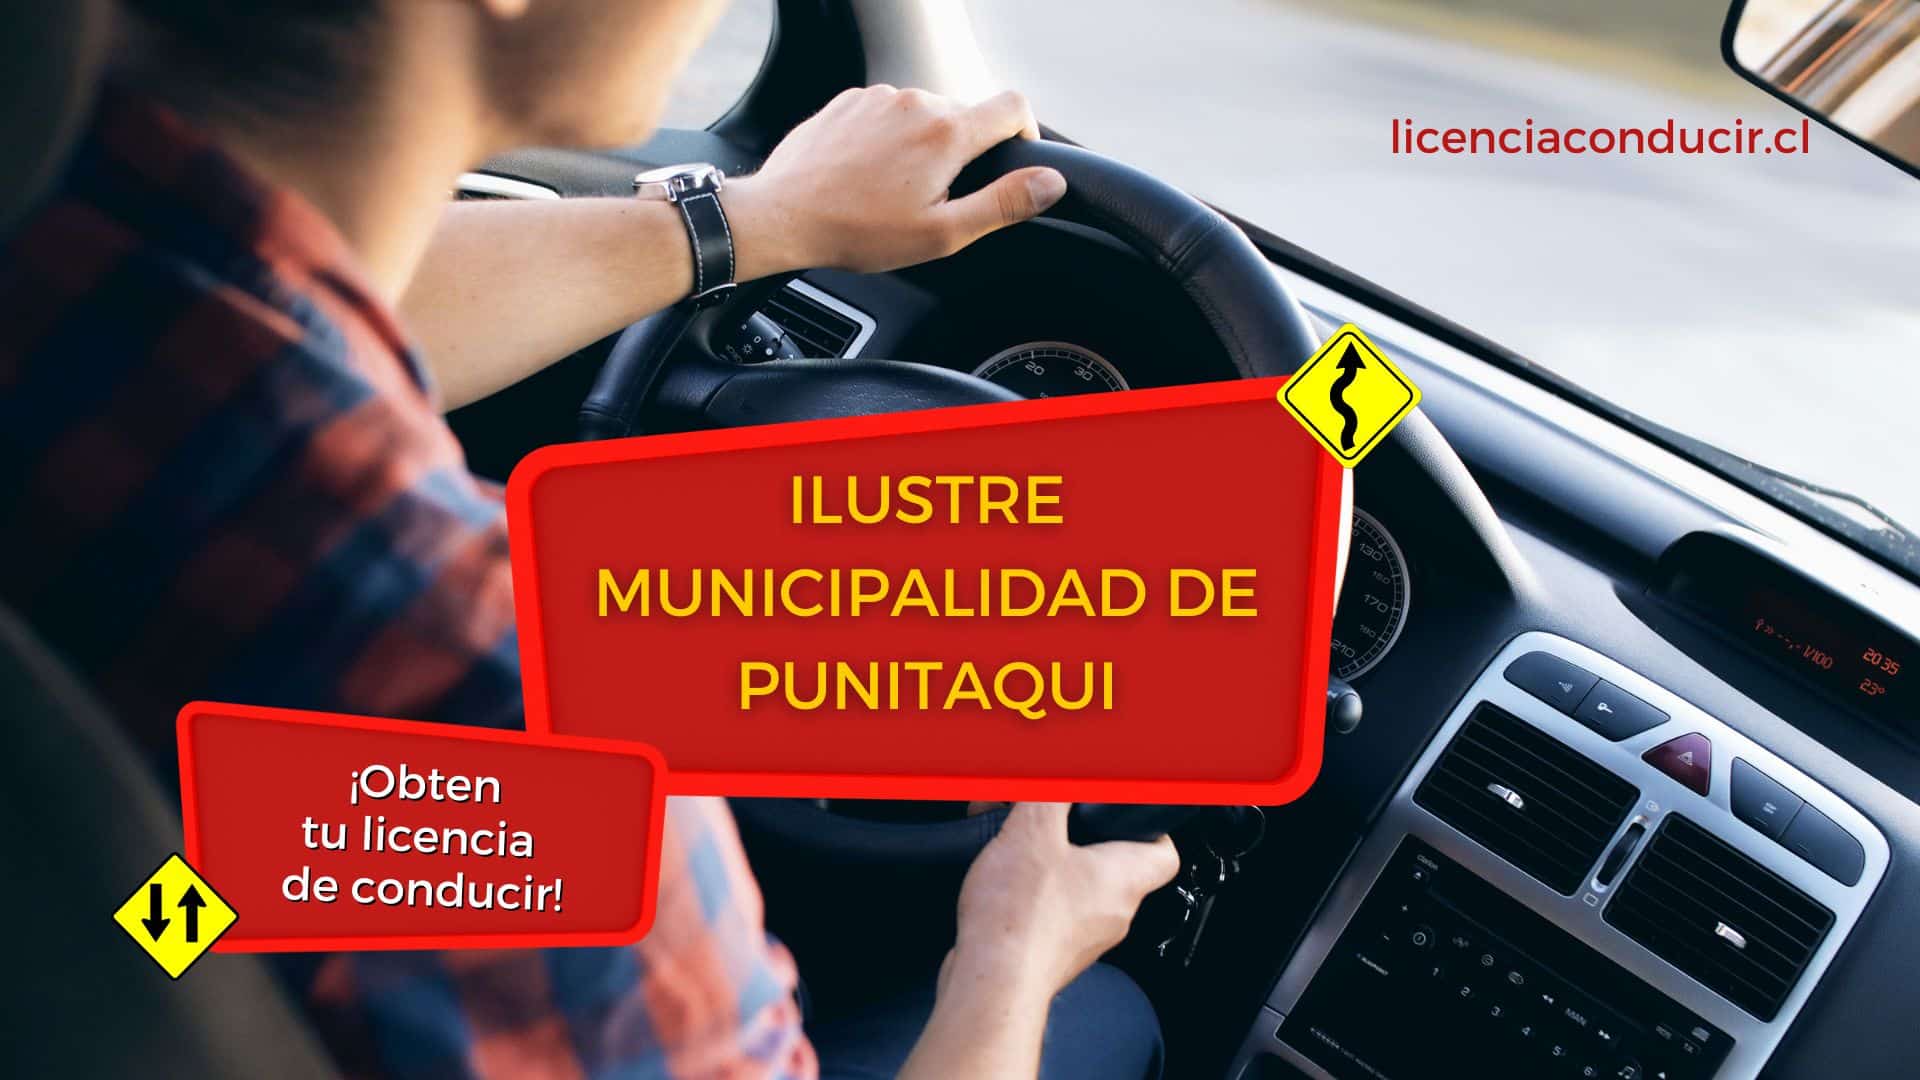 Obtener licencia conducir en punitaqui